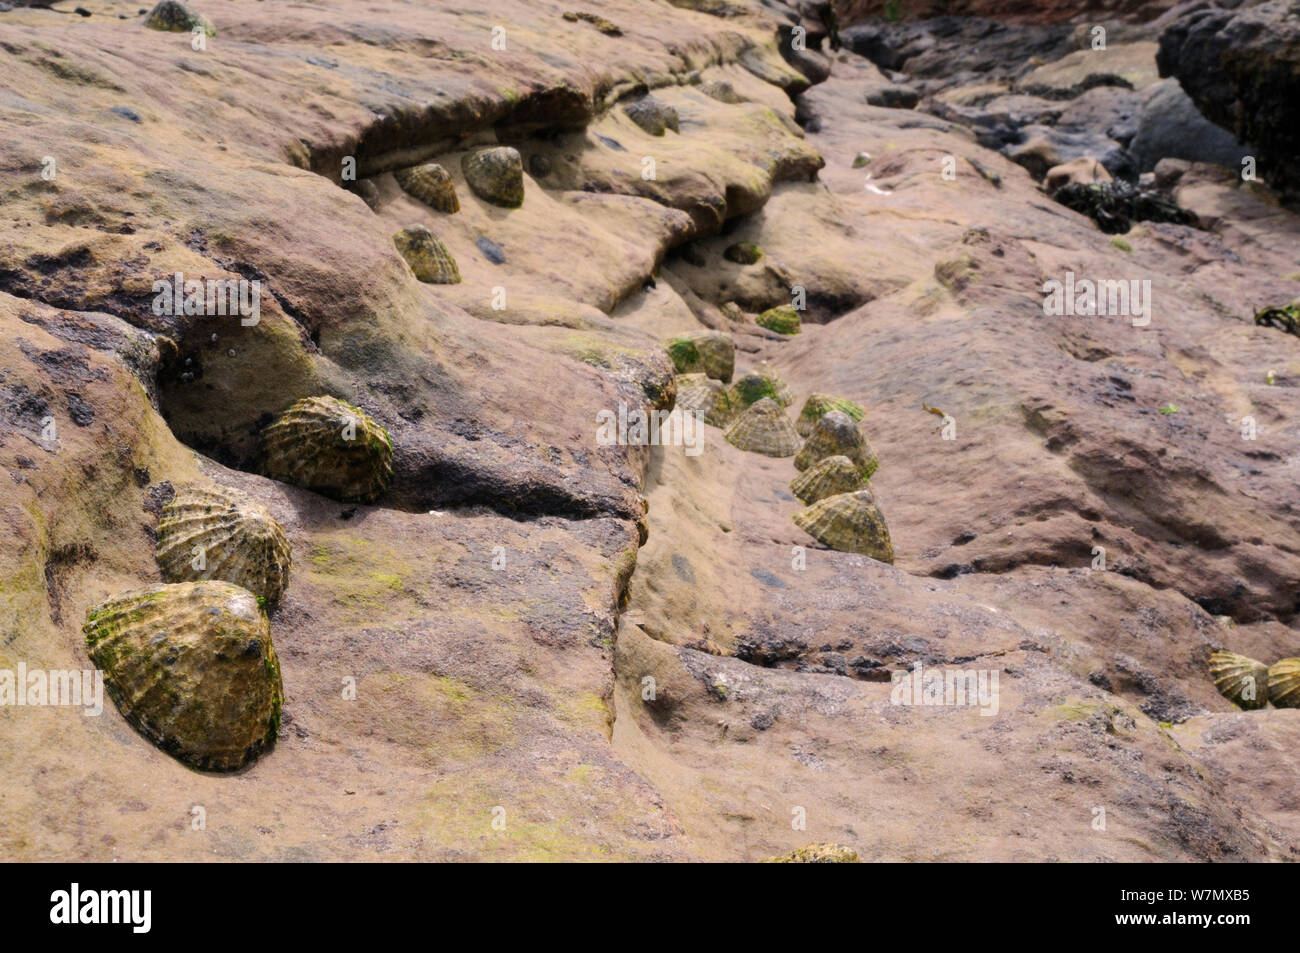 La patelle commune (Patella vulgata) regroupées dans des ravins et des dépressions dans le grès rouge haute rock sur la berge à Crail, Écosse, Royaume-Uni, juillet. Banque D'Images